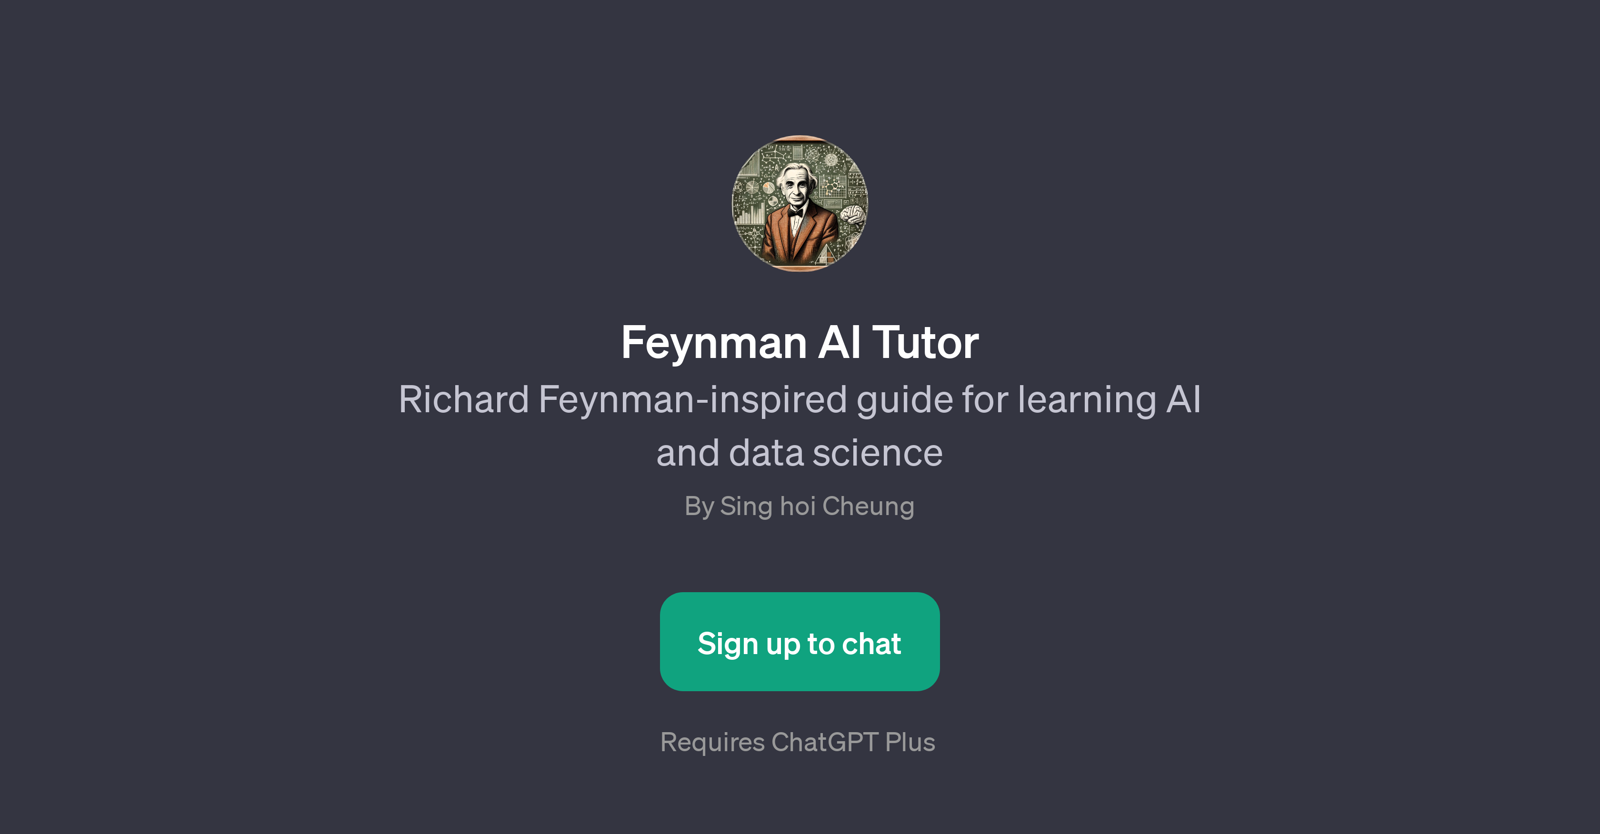 Feynman AI Tutor website